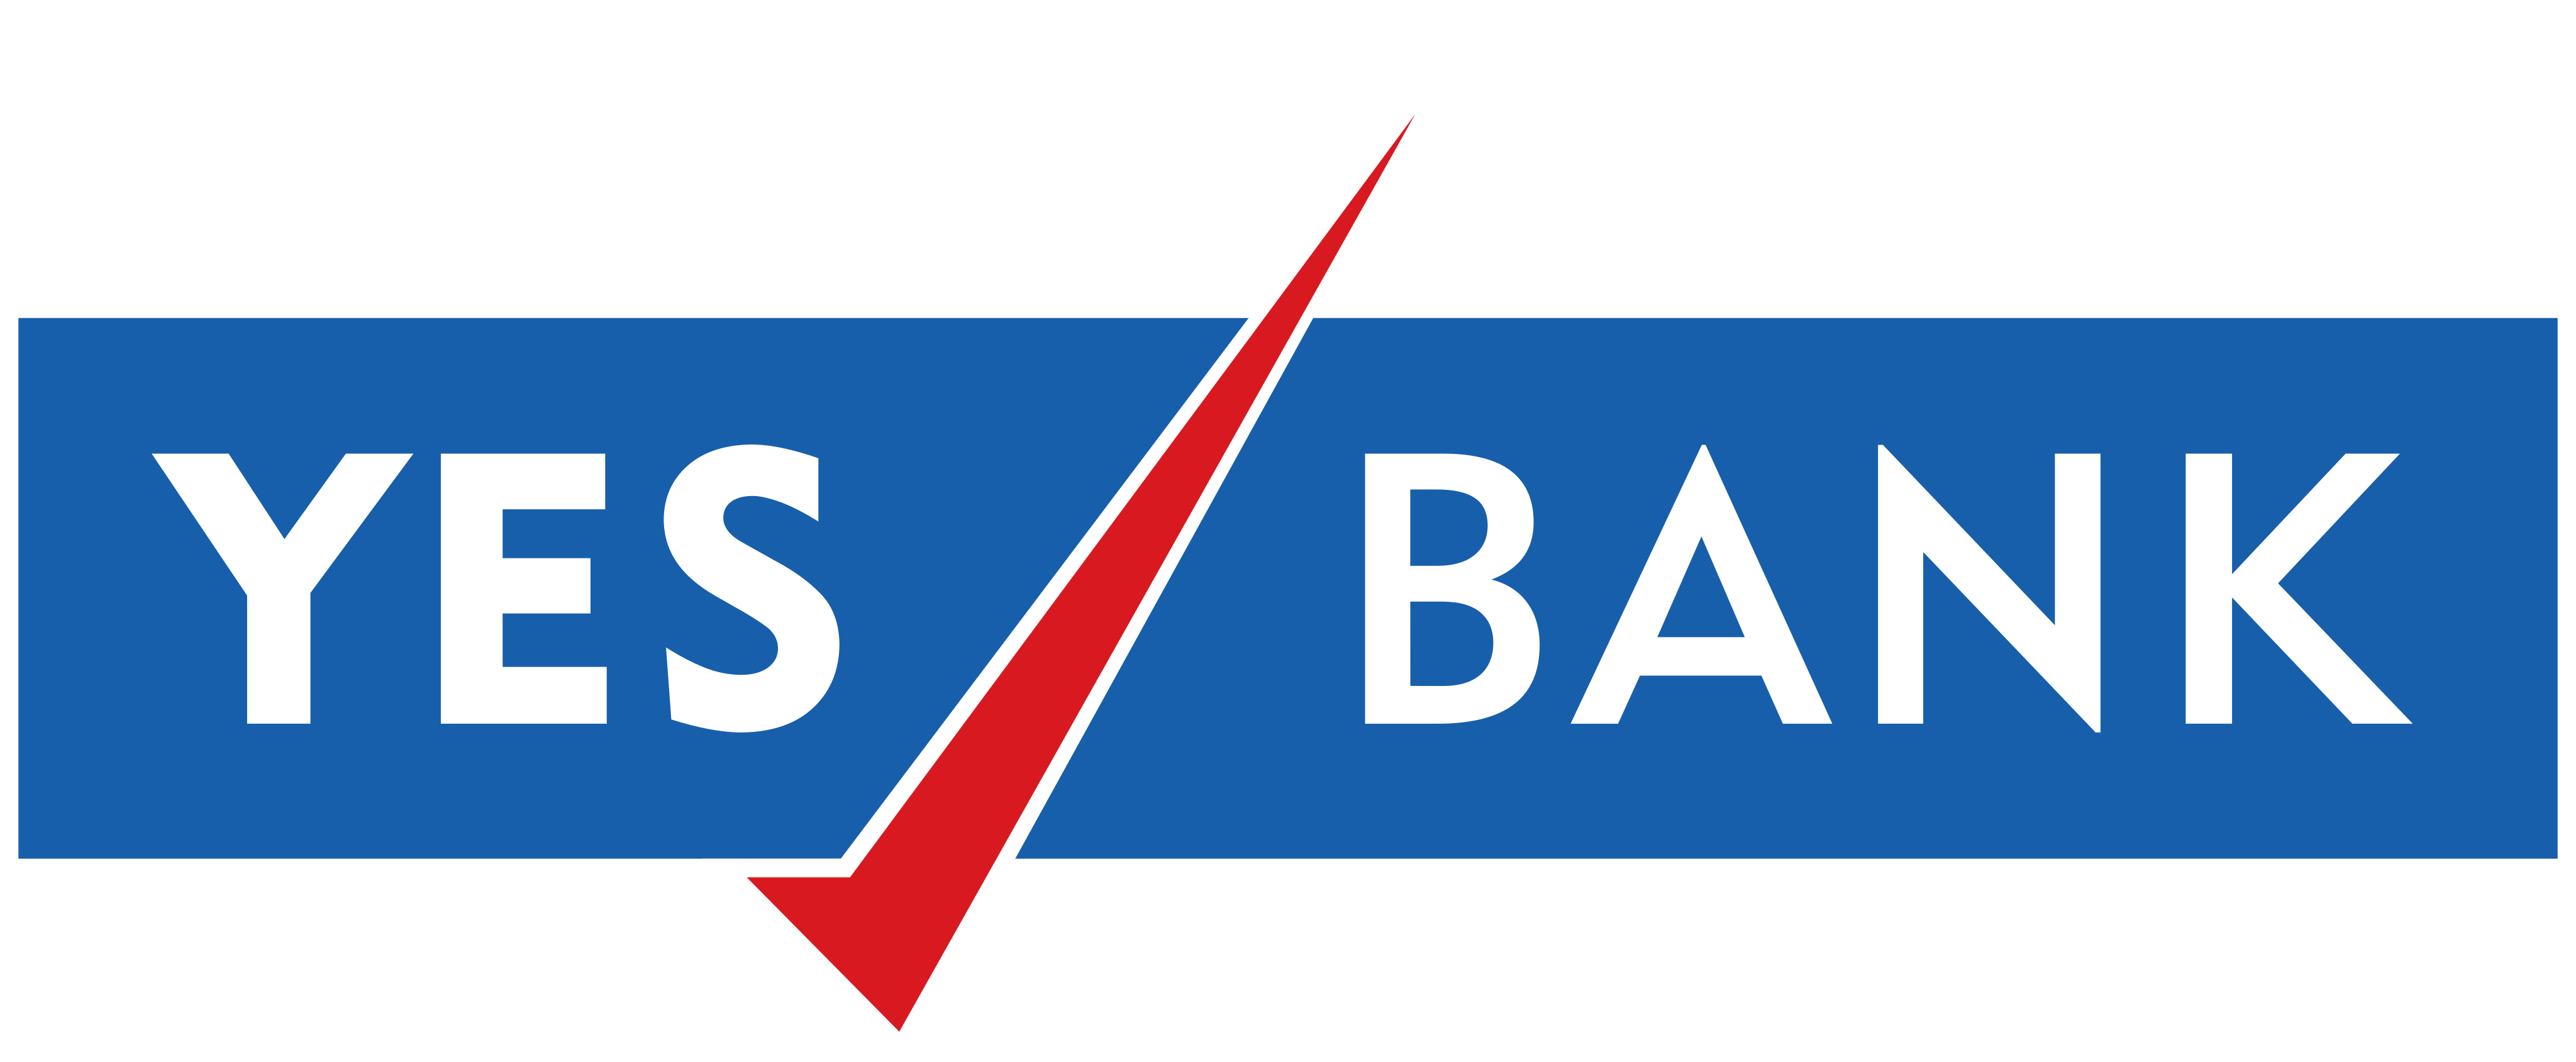 Yes Bank Logo.